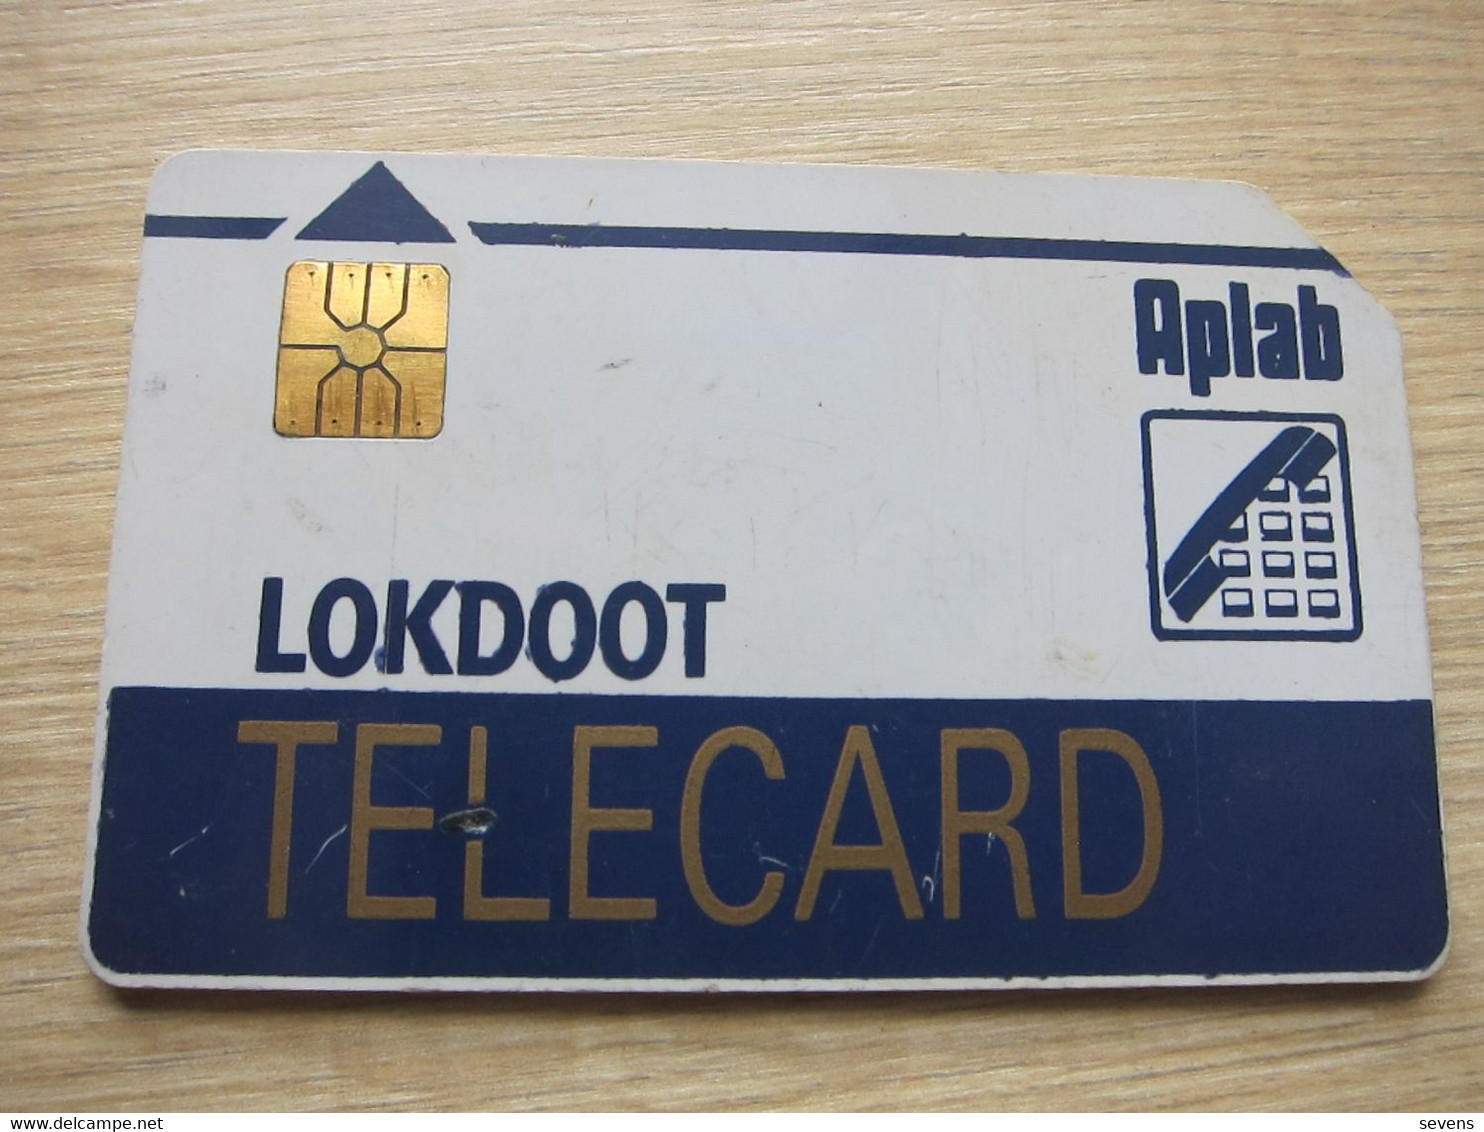 Aplab LOKDOOT Chip Phonecard, LOK02d, Backside 8 Digit Serial Number, Used,backside With Gold Cover - Inde